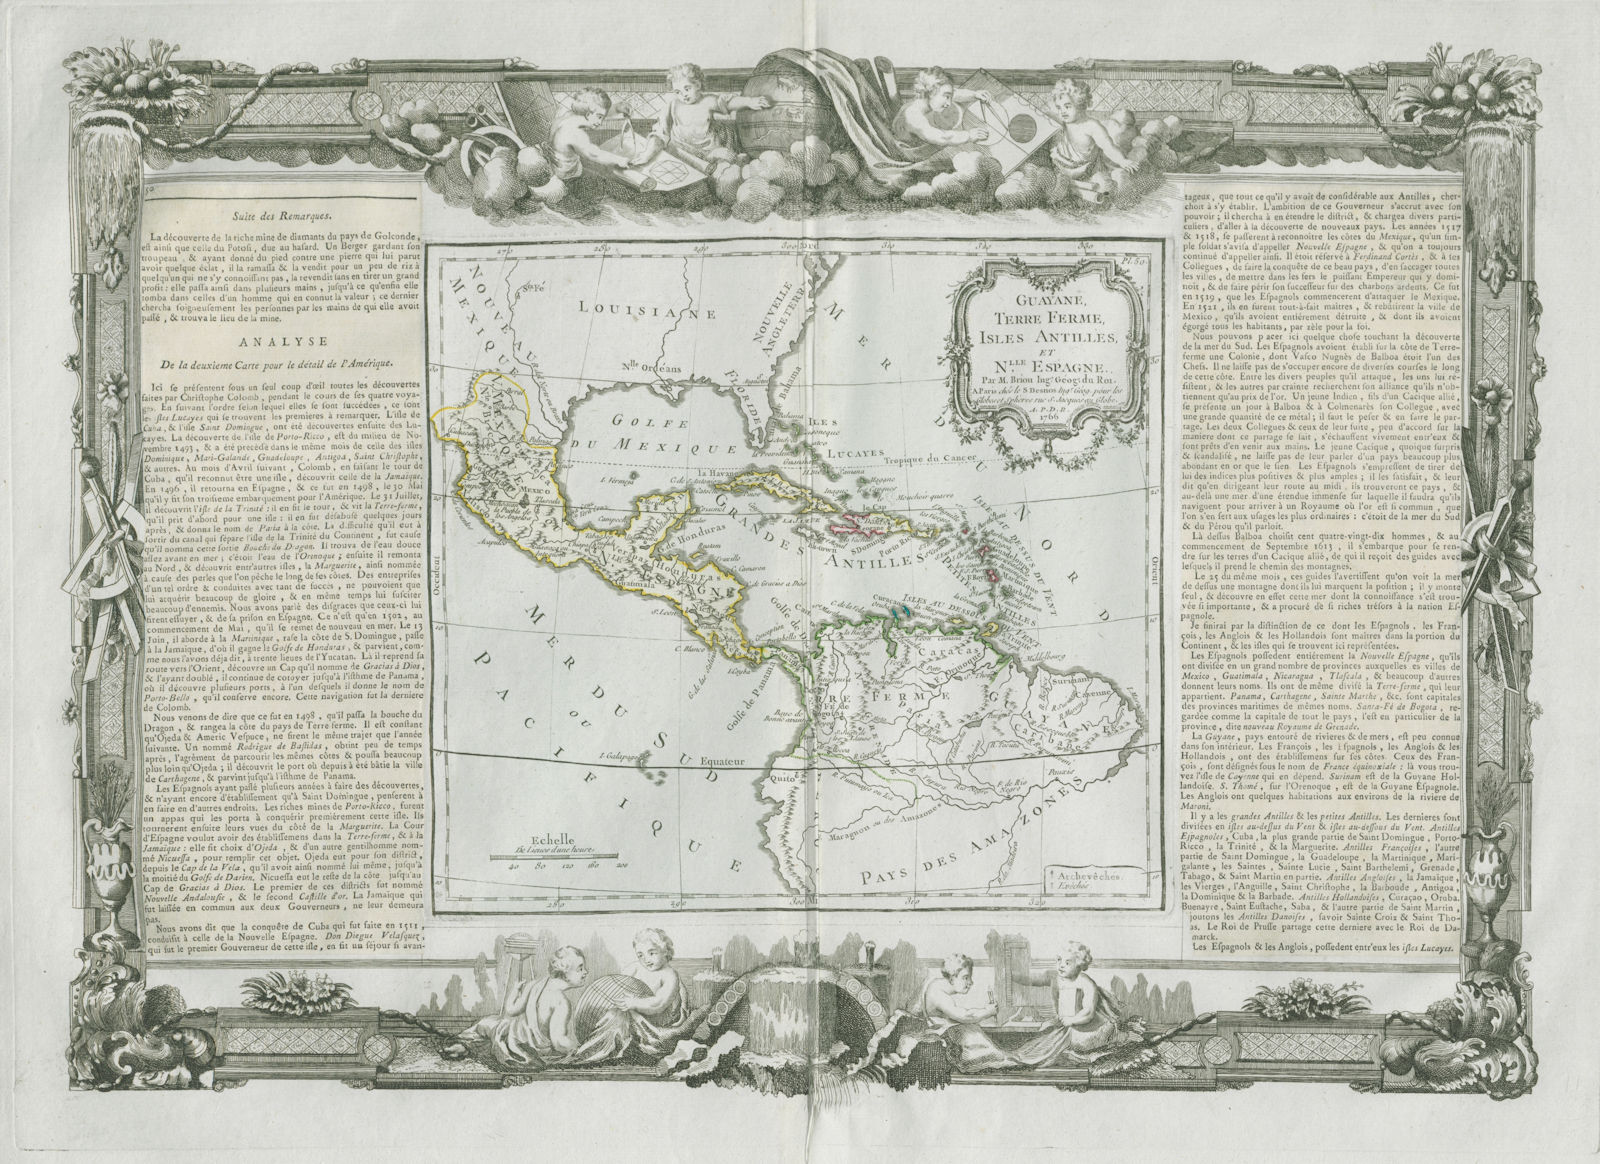 Guayane, Terre Ferme, Isles Antilles et Nlle Espagne. DESNOS/DE LA TOUR 1771 map